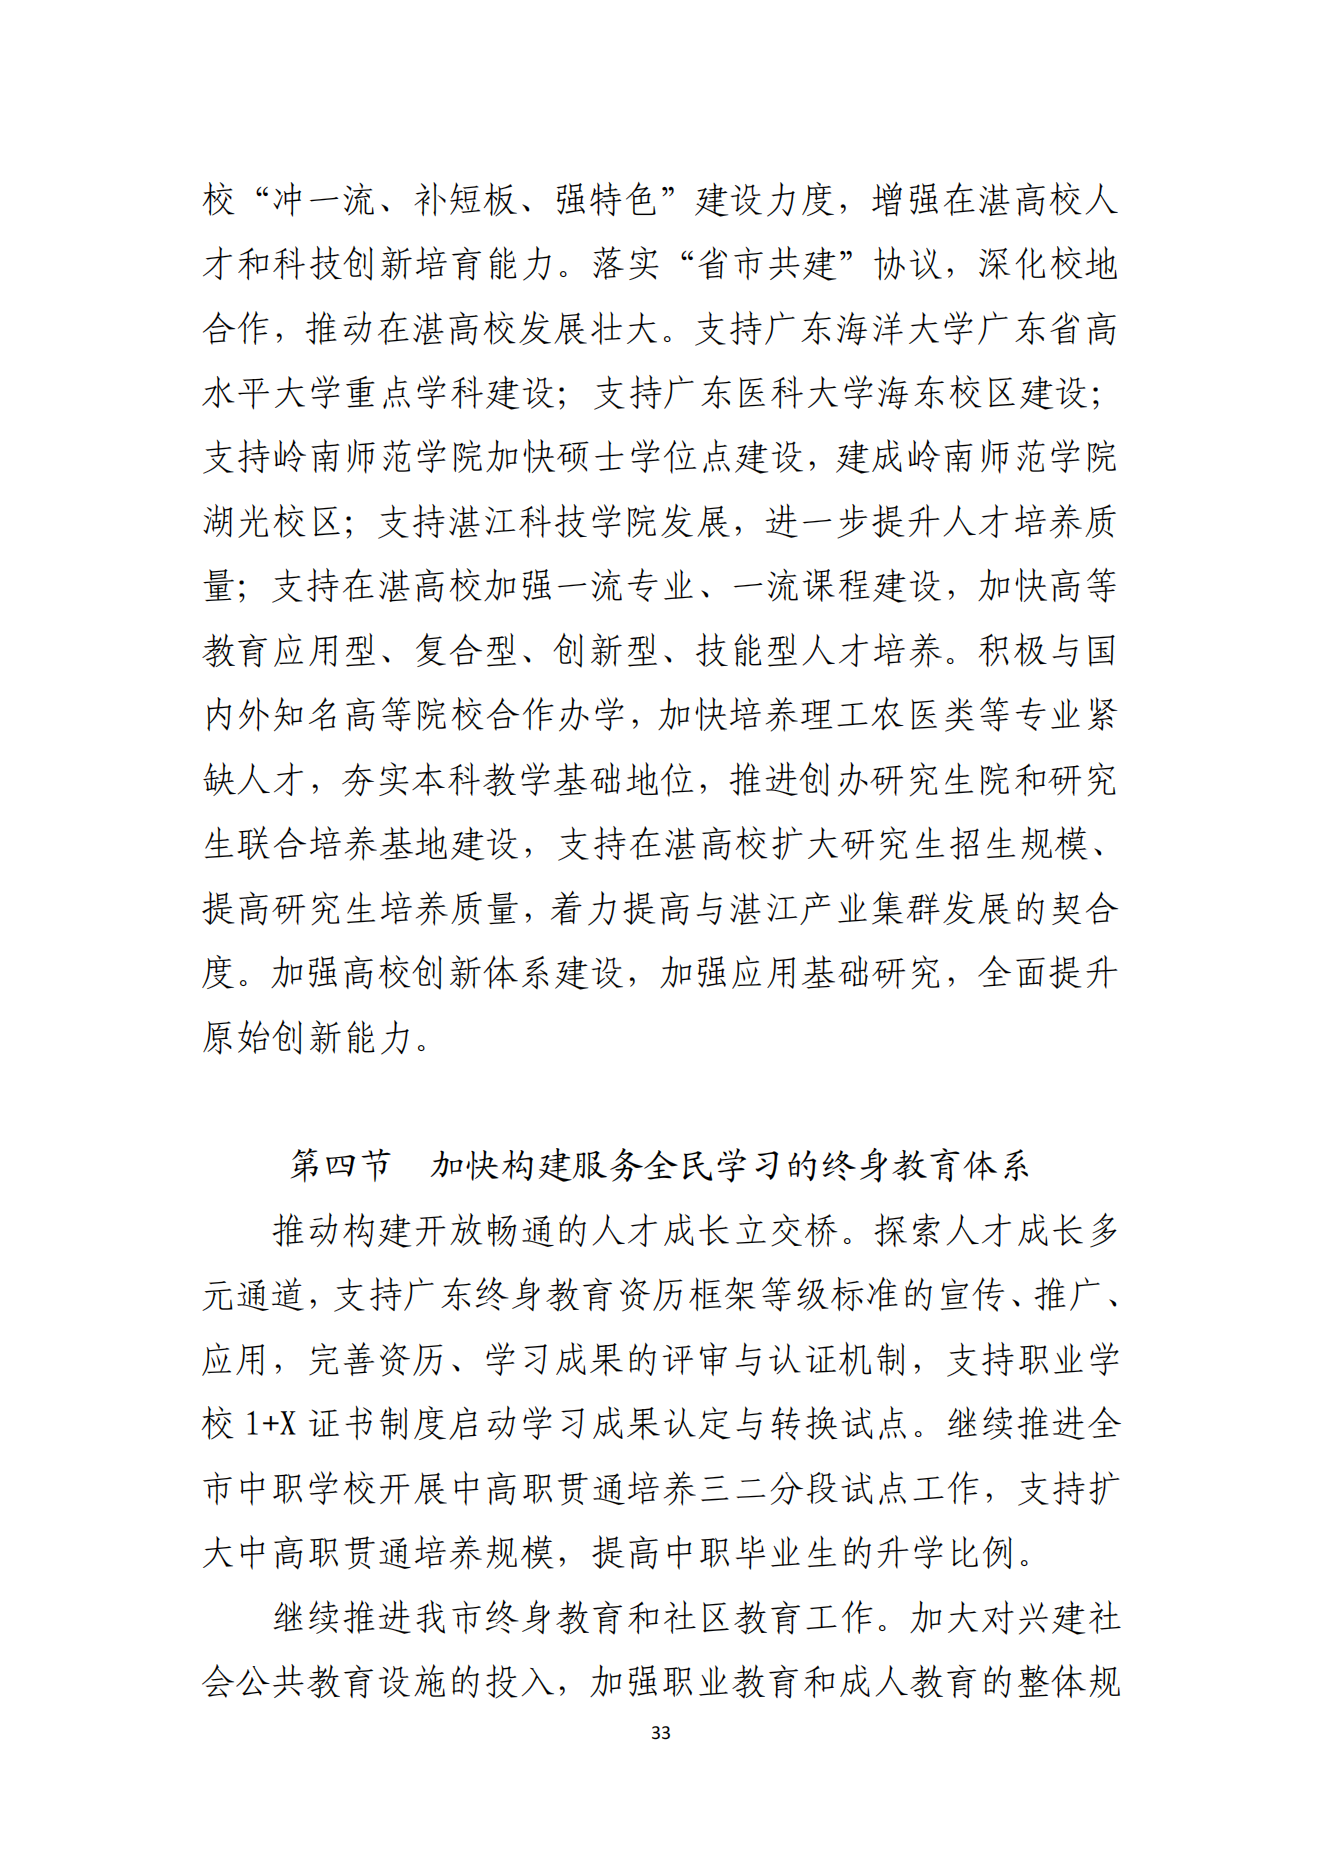 湛江市人民政府办公室关于印发湛江市教育发展“十四五”规划的通知_32.png